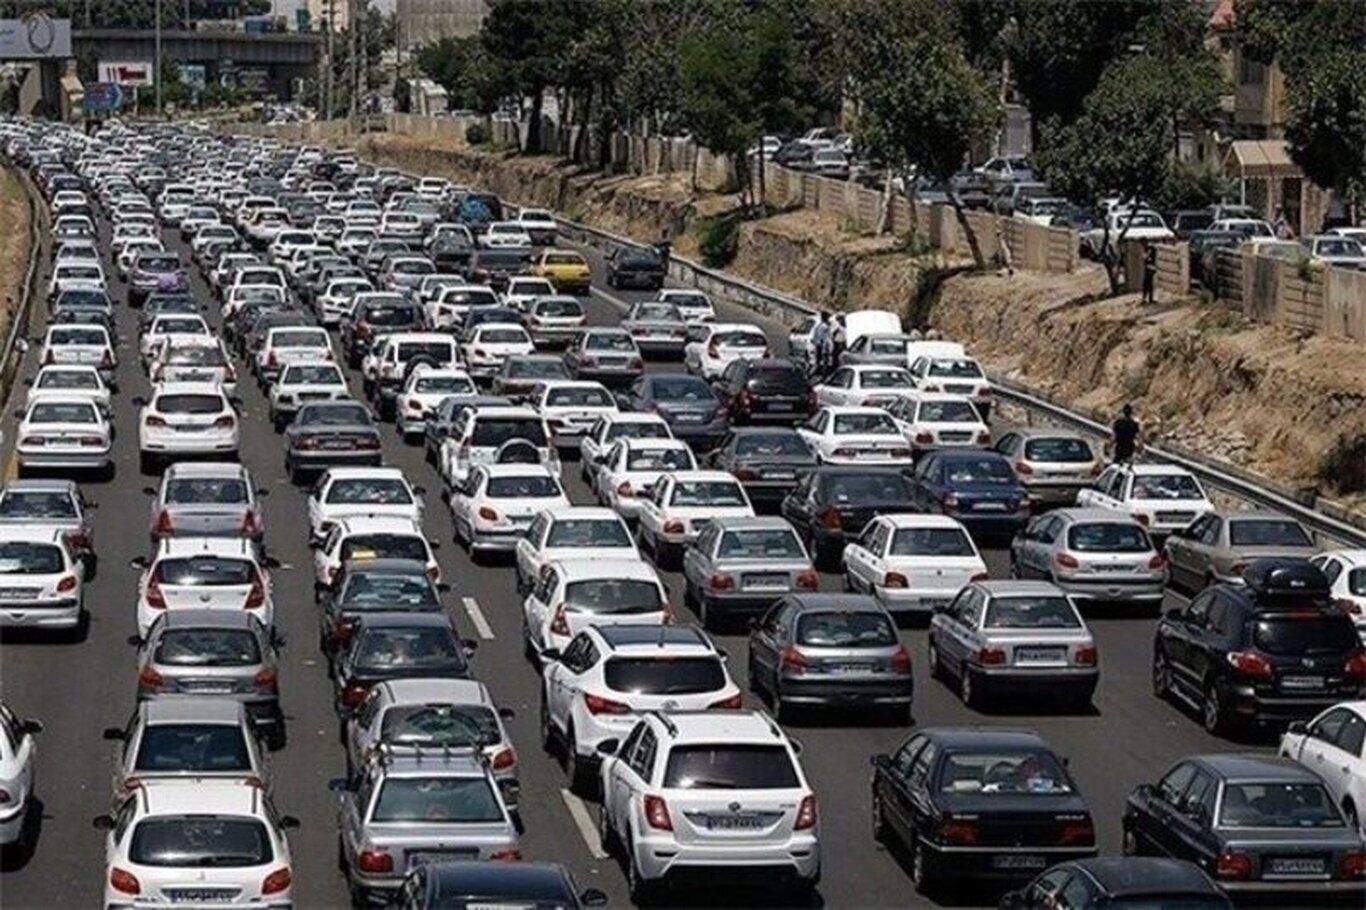 جاده چالوس قفل شد / ترافیک سنگین در آزادراه های البرز